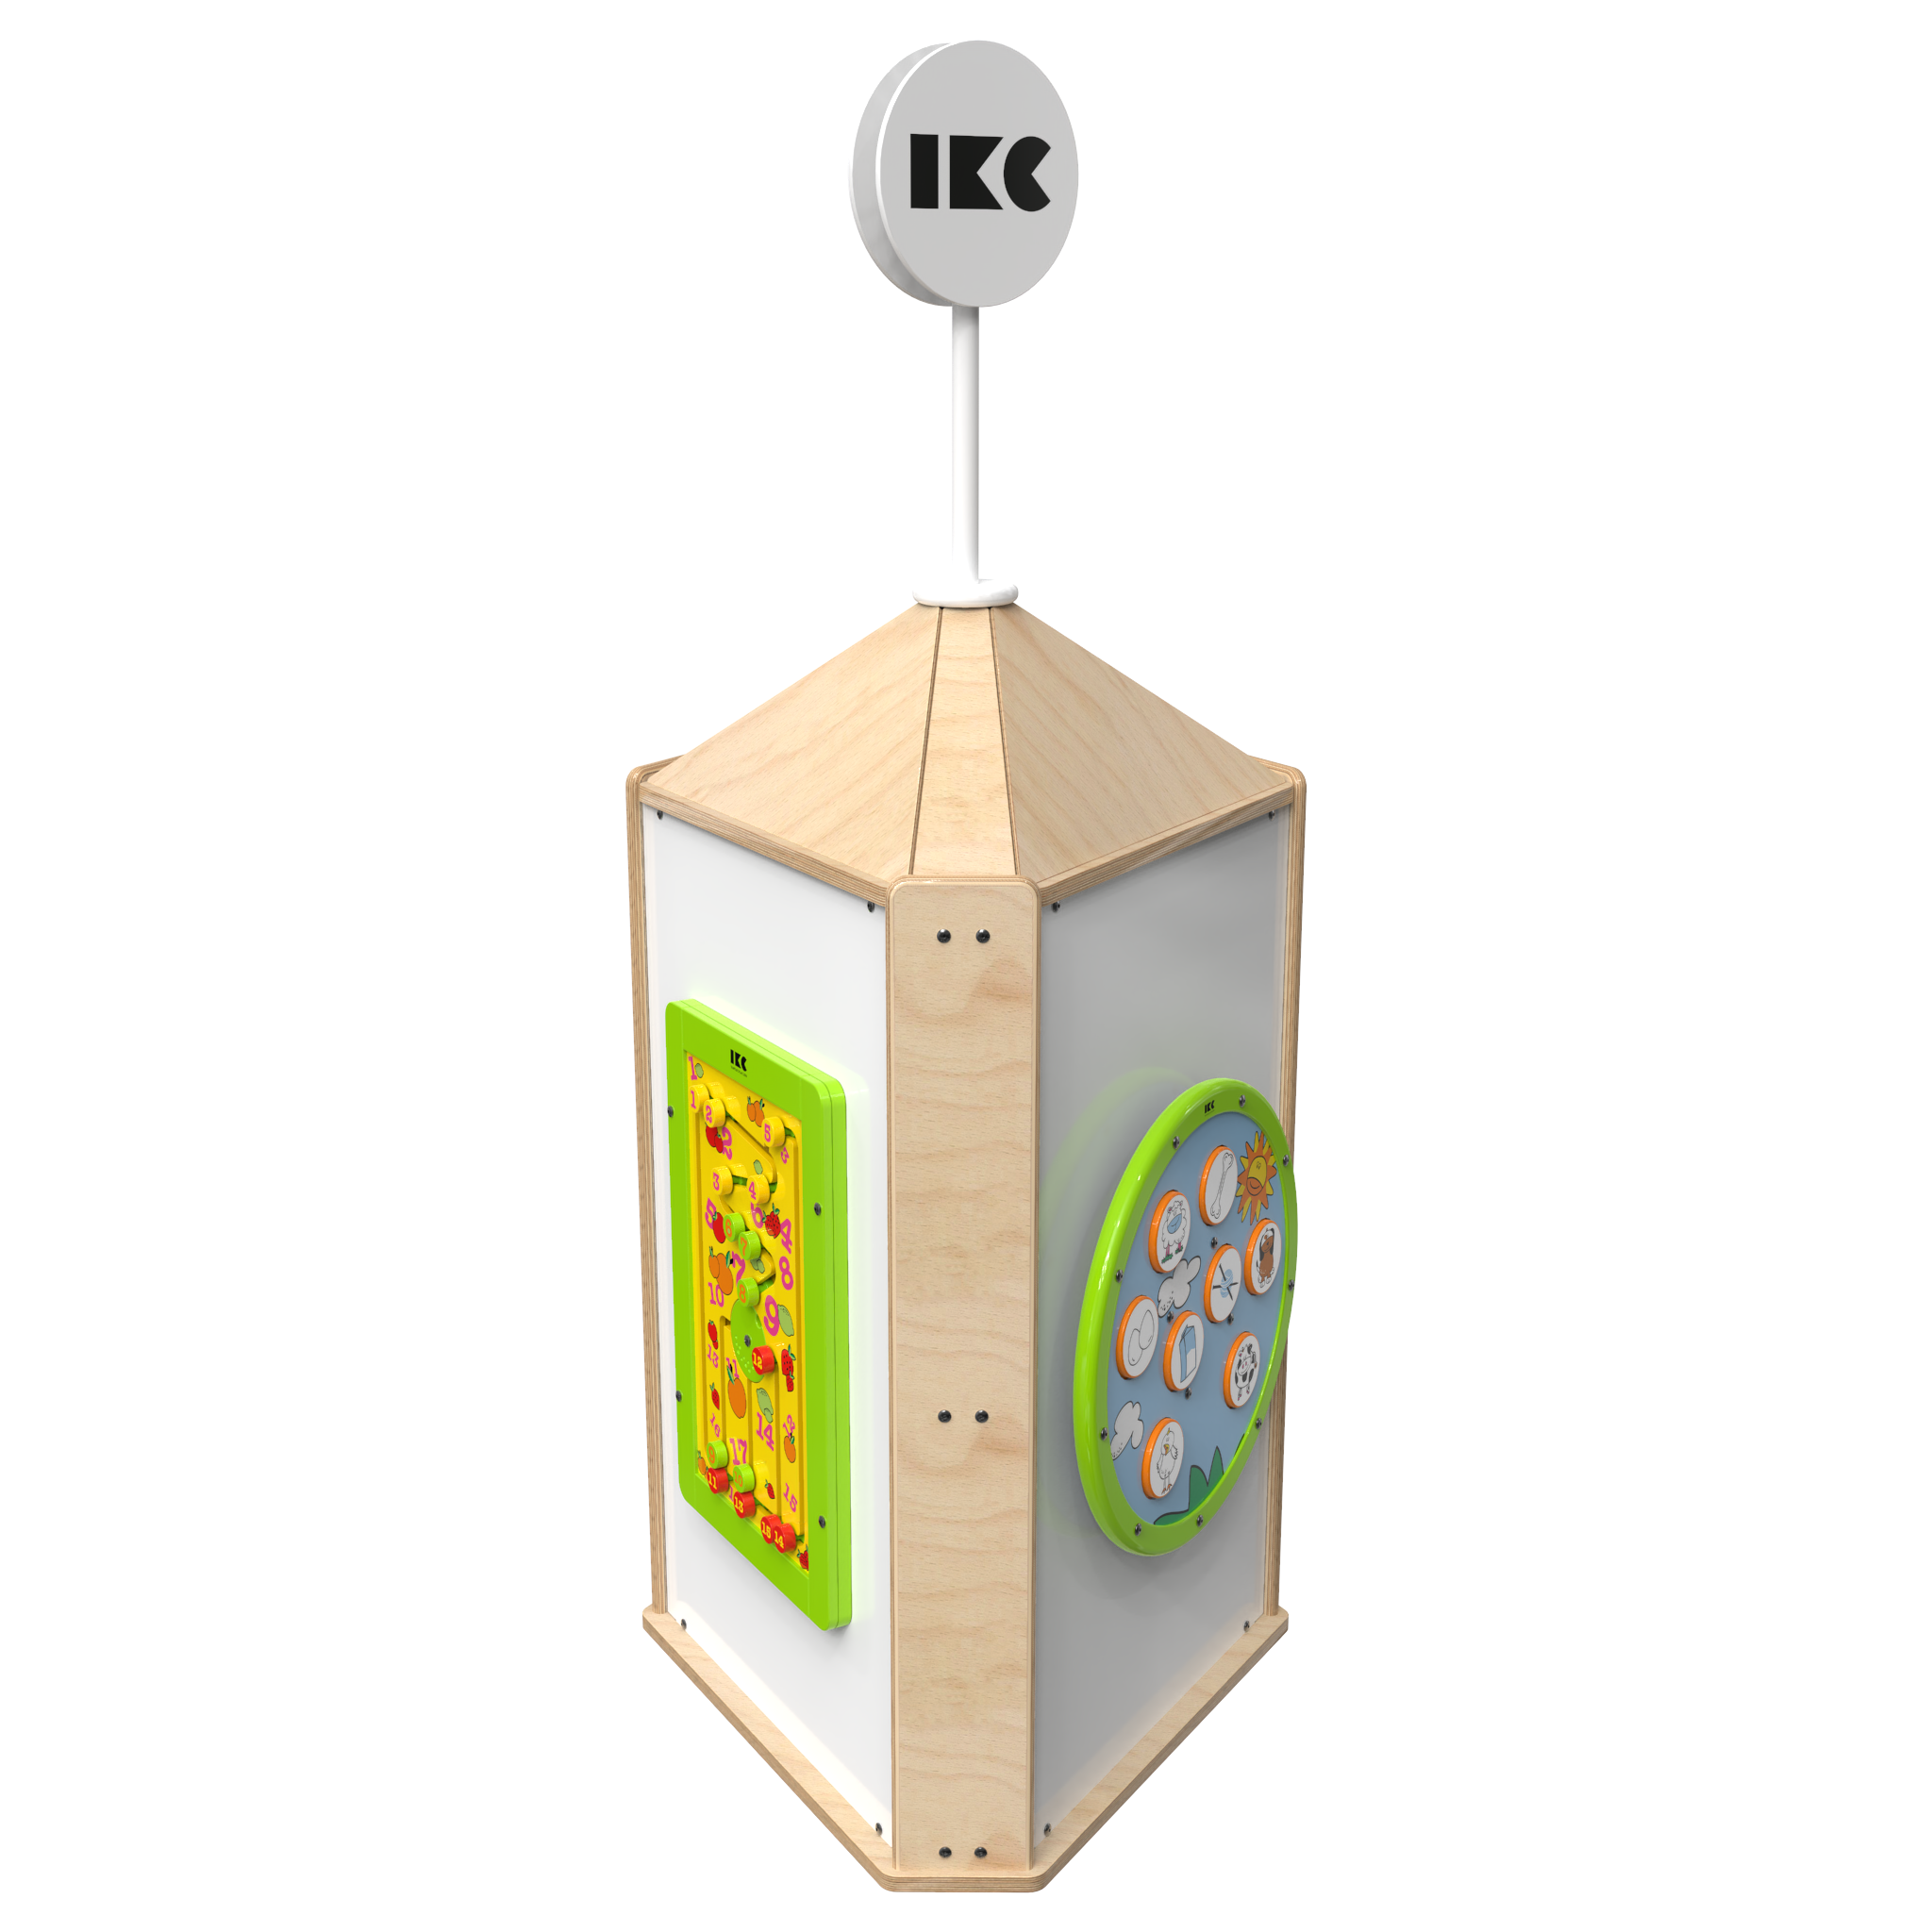 Quest'imagine mostra sistema di gioco interattivi Playtower touch wood